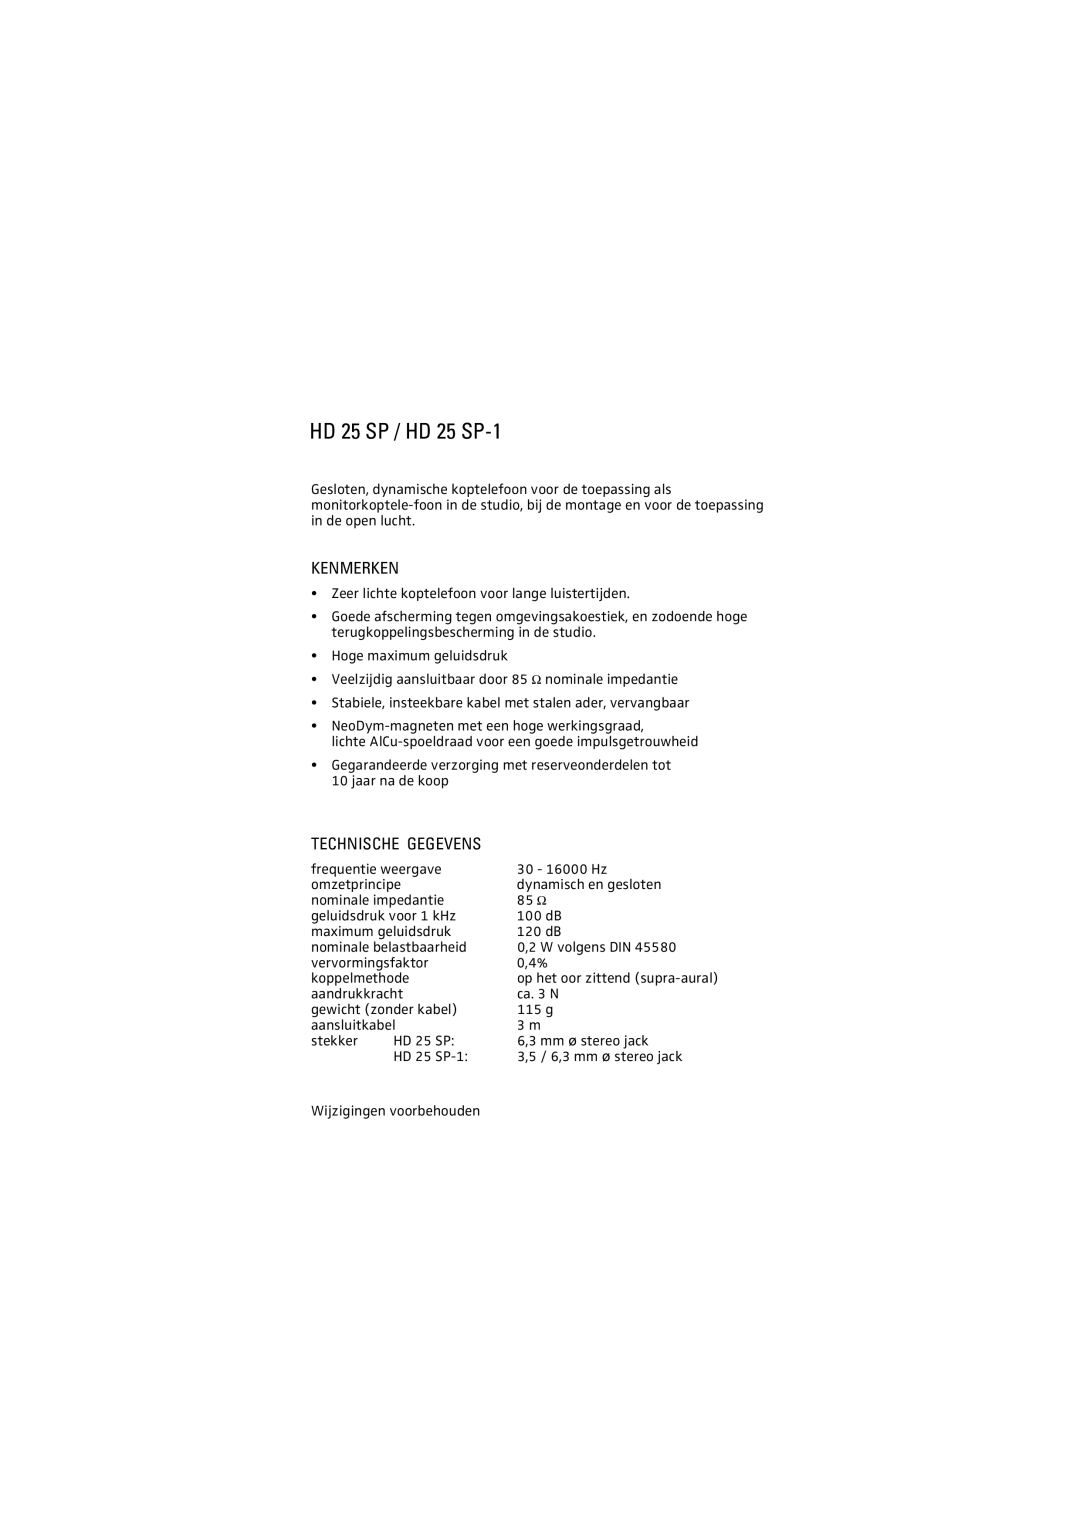 Sennheiser manual Kenmerken, Technische Gegevens, HD 25 SP / HD 25 SP-1 